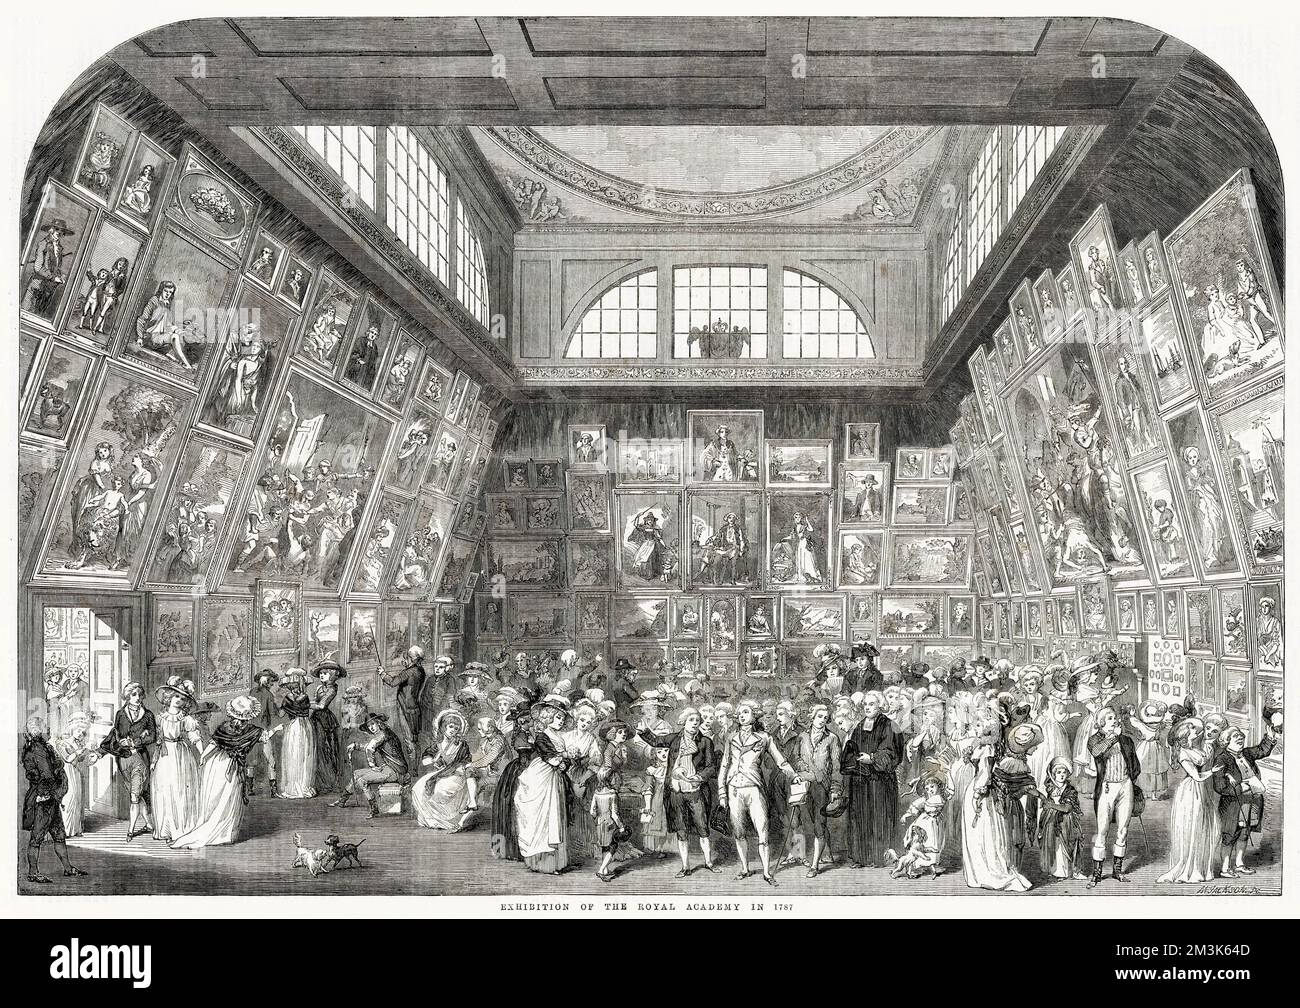 Eine der Hauptgalerien für die Royal Academy Exhibition von 1787 in London. Dieses Bild zeigt eine große Menschenmenge, die die Gemälde bewundert, die fast jeden Zentimeter der Wände bedecken. Stockfoto